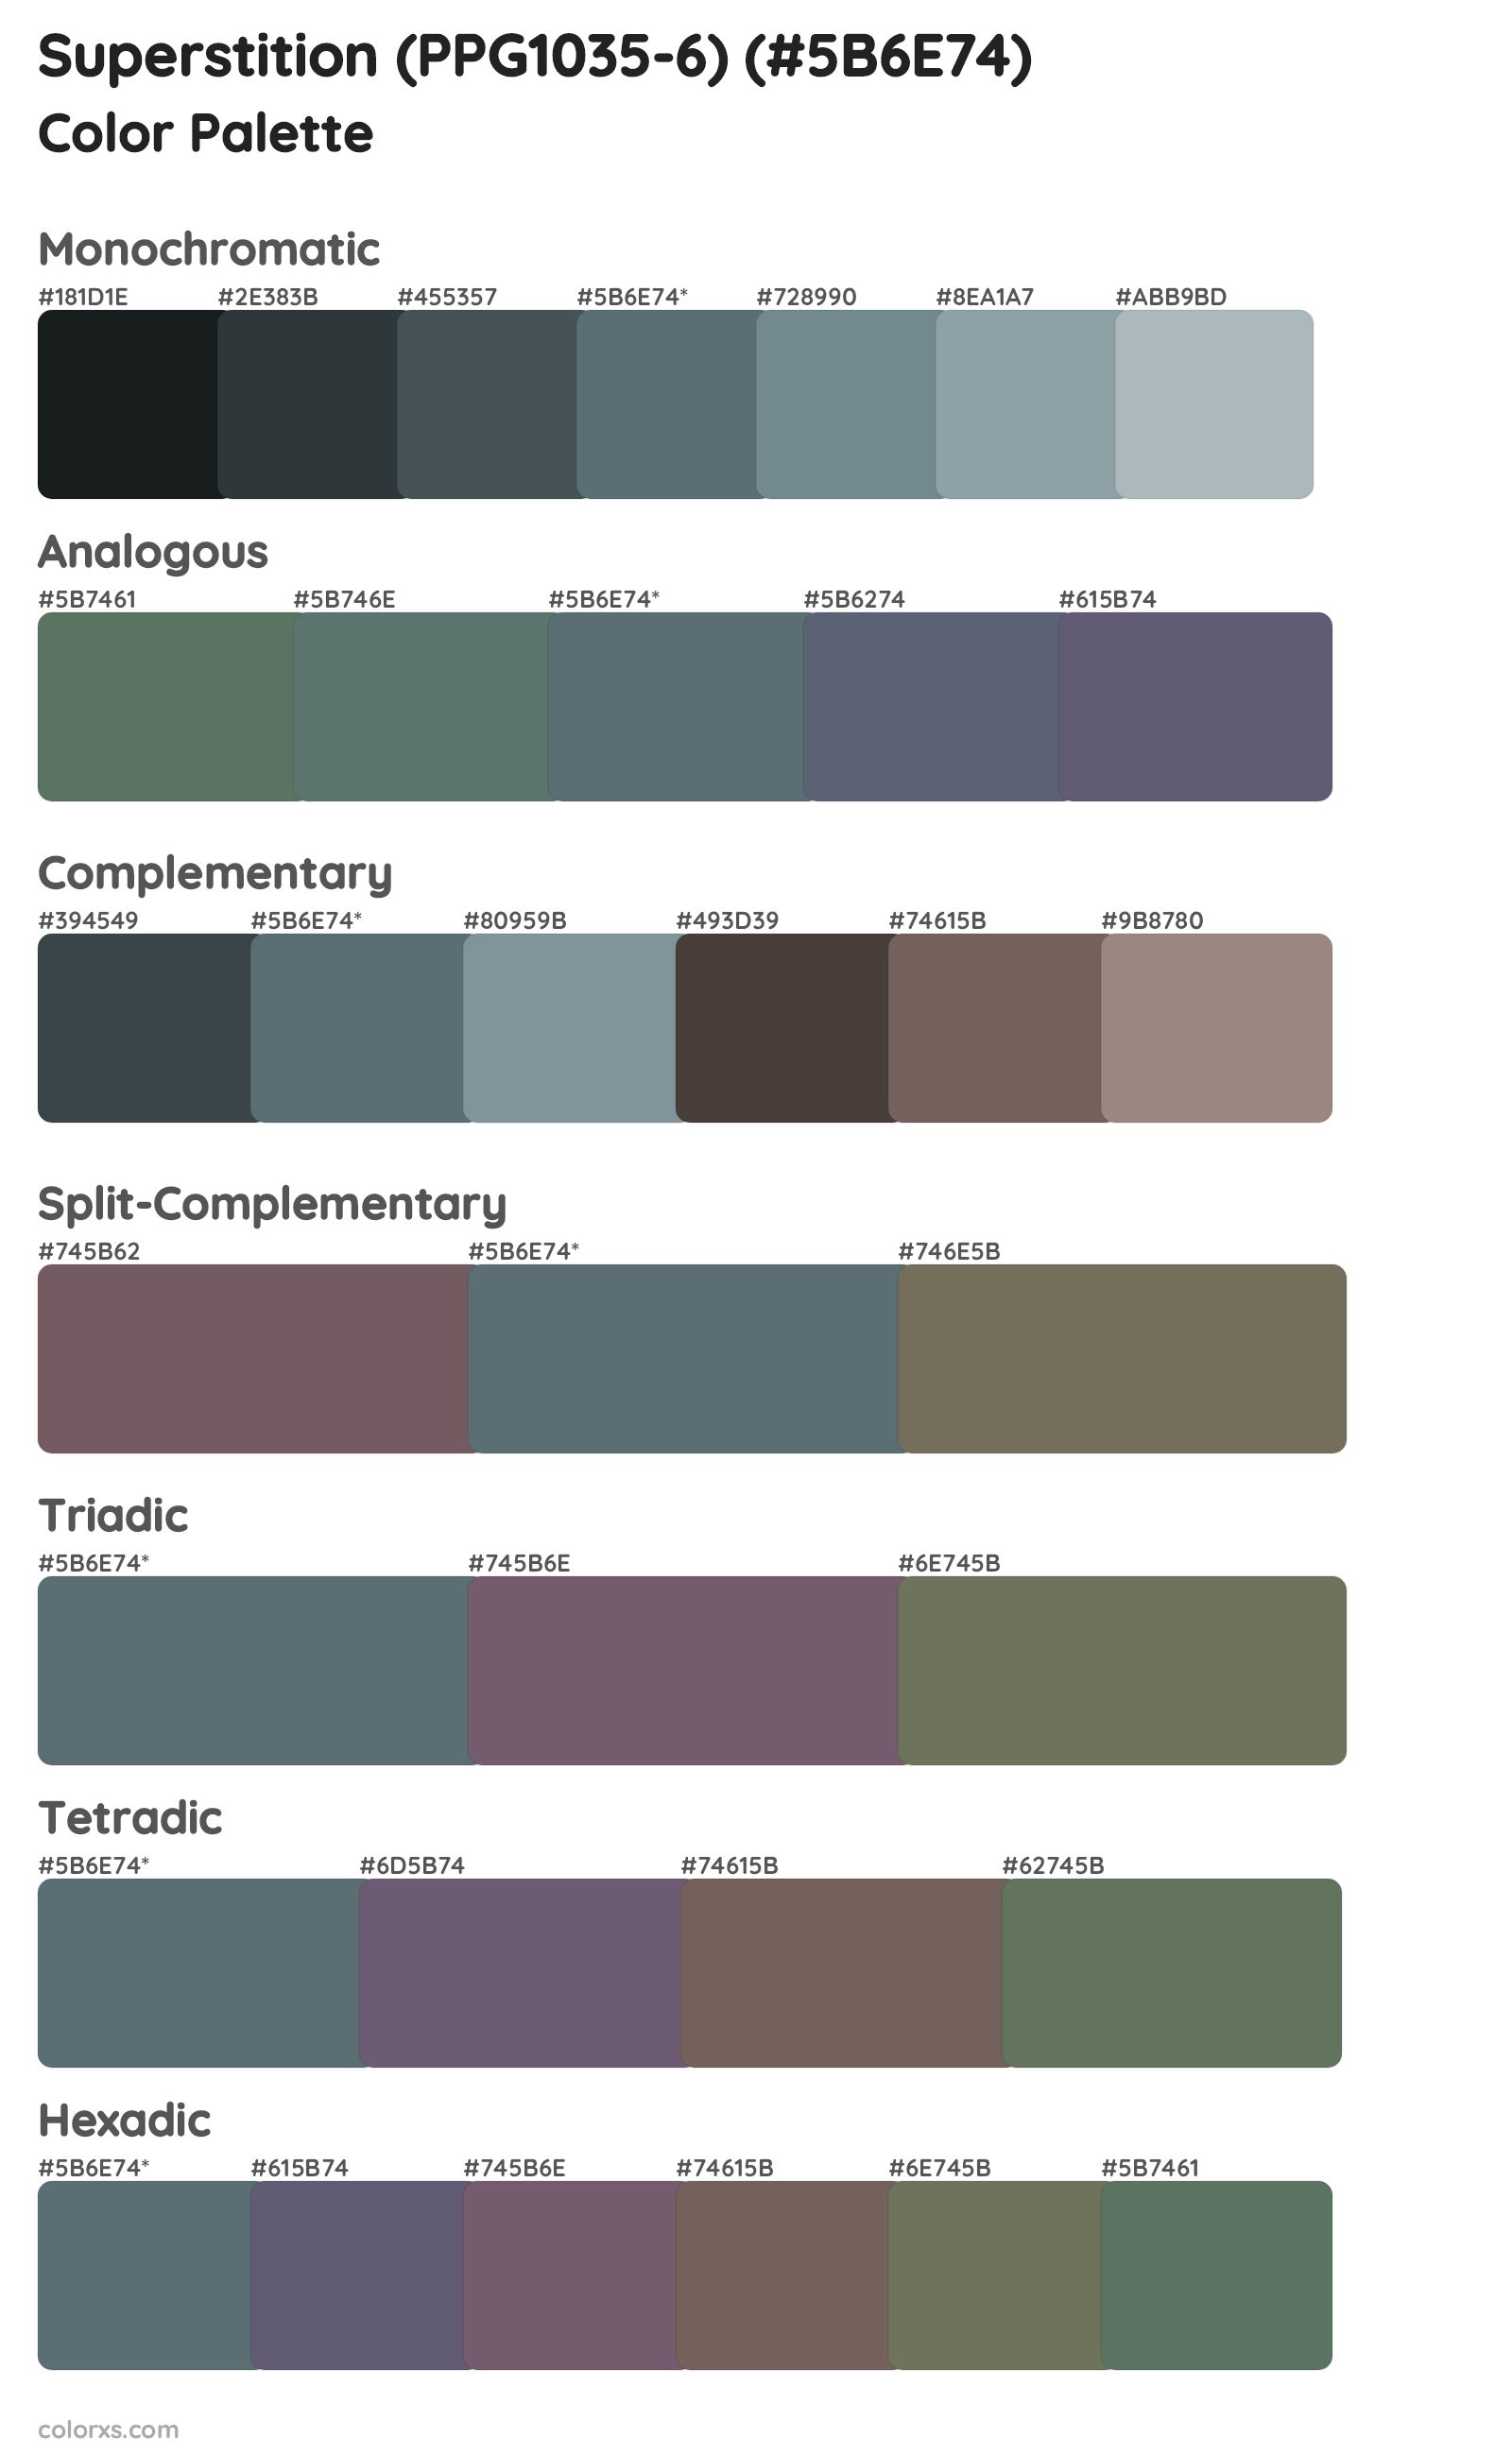 Superstition (PPG1035-6) Color Scheme Palettes